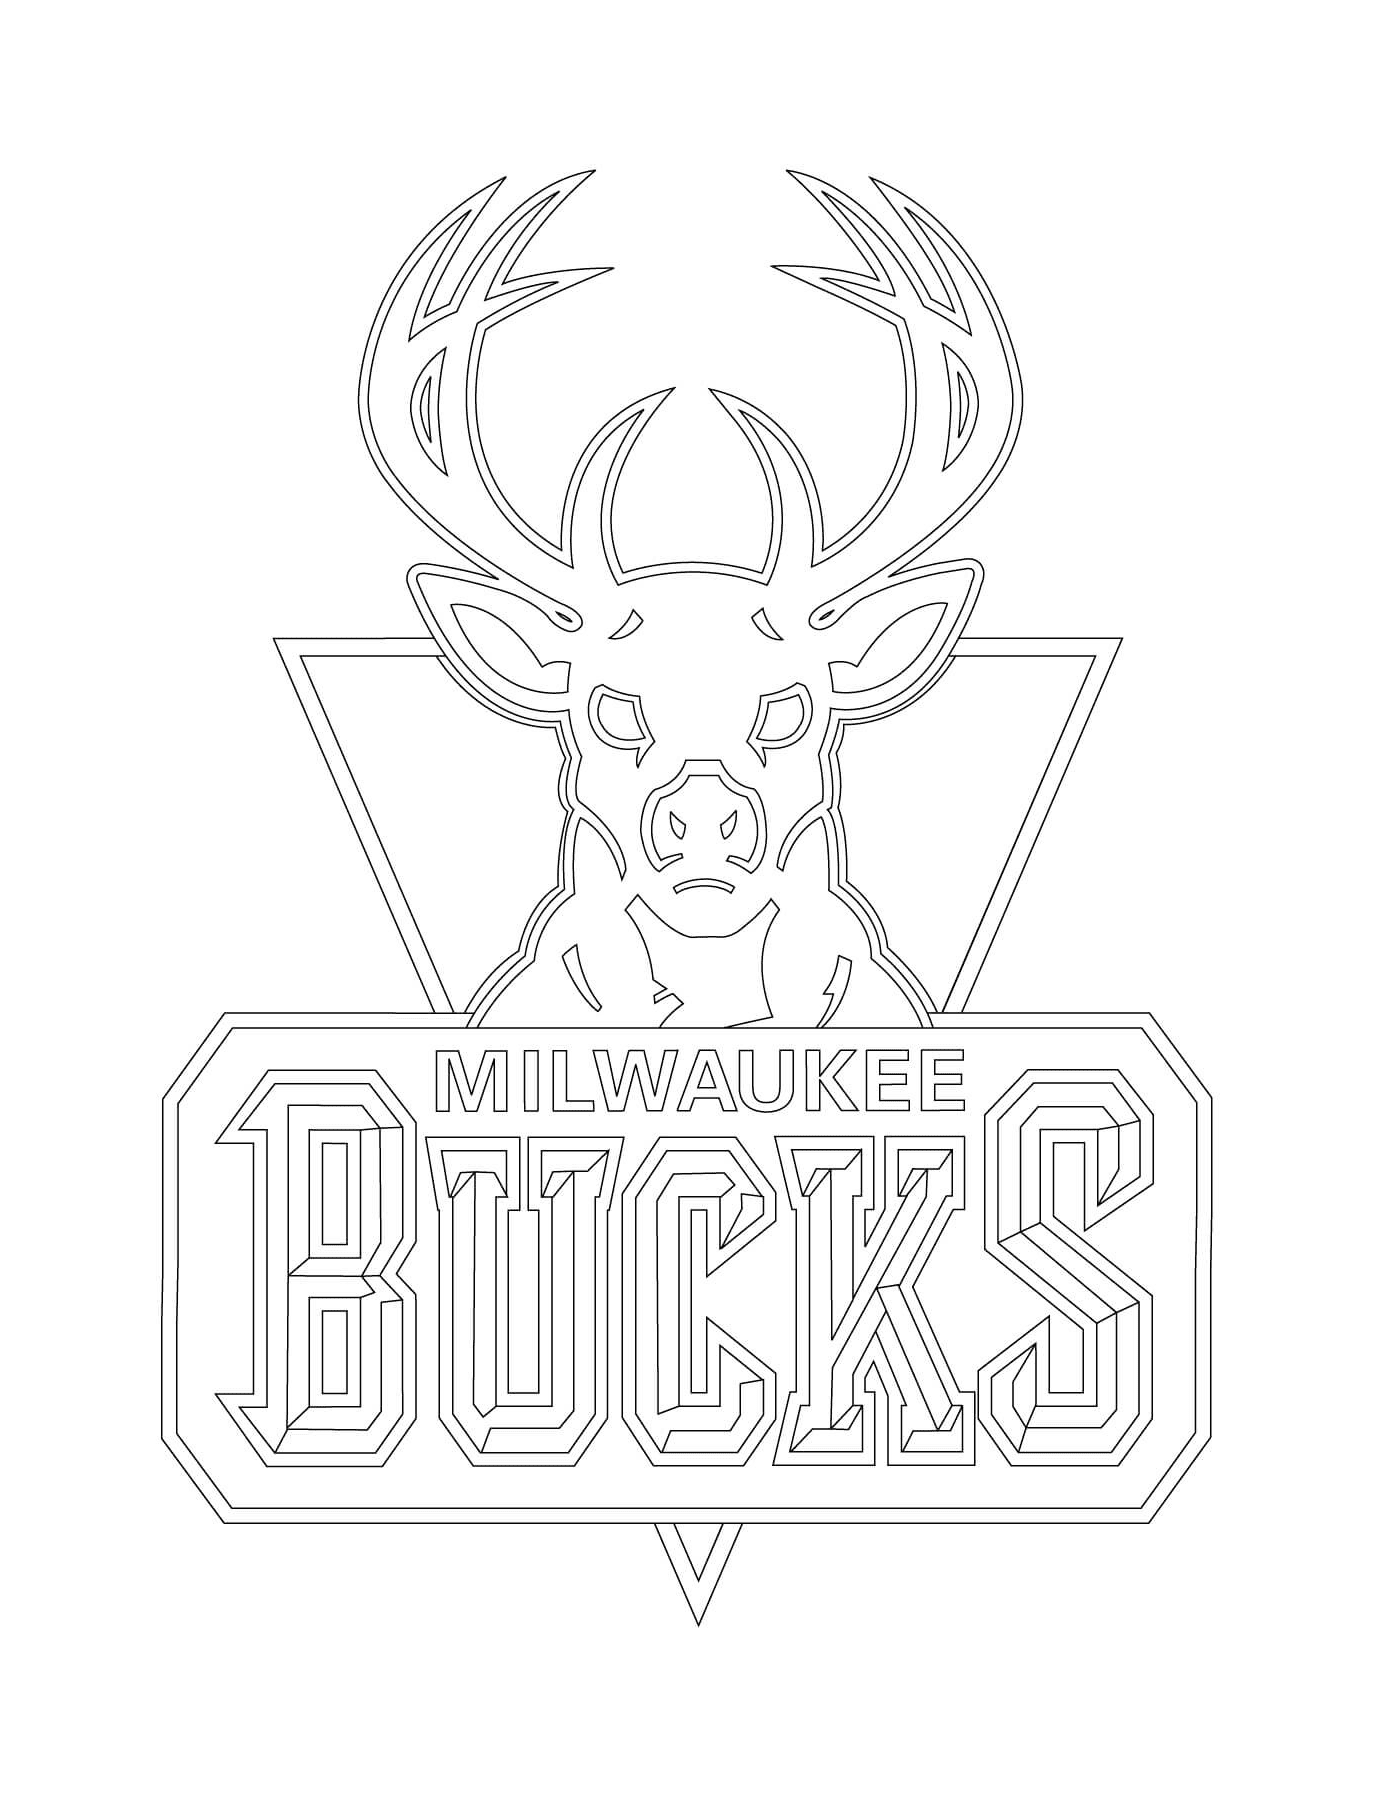  The logo of the NBA Milwaukee Bucks 